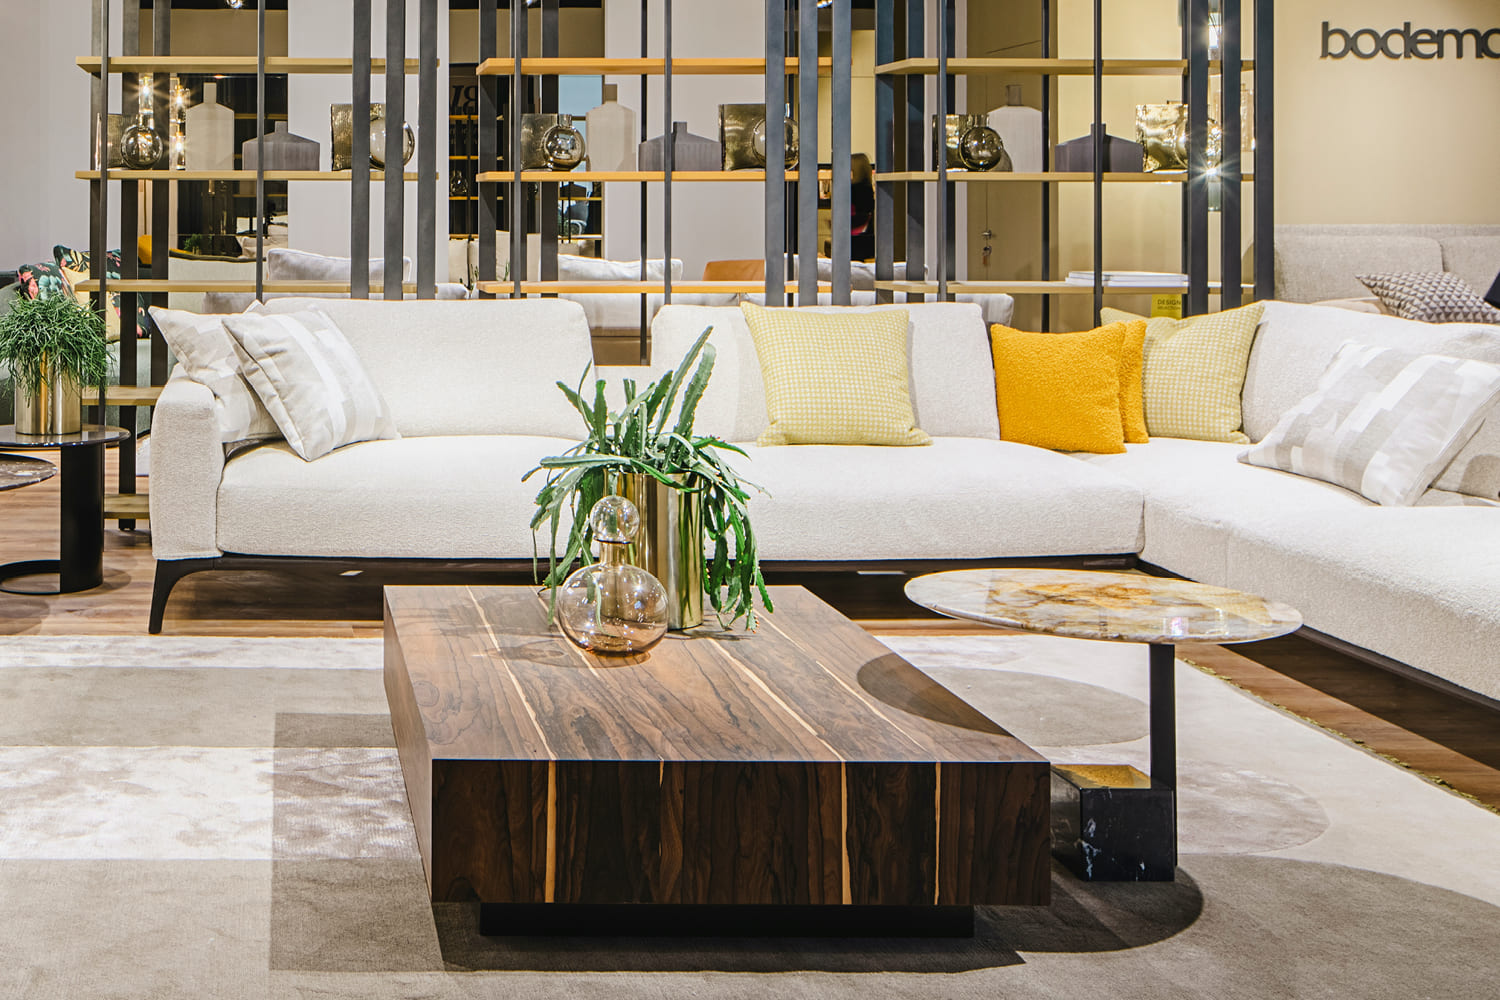 Wohnbereich mit Möbeln aus der Bodema-Kollektion ausgestattet